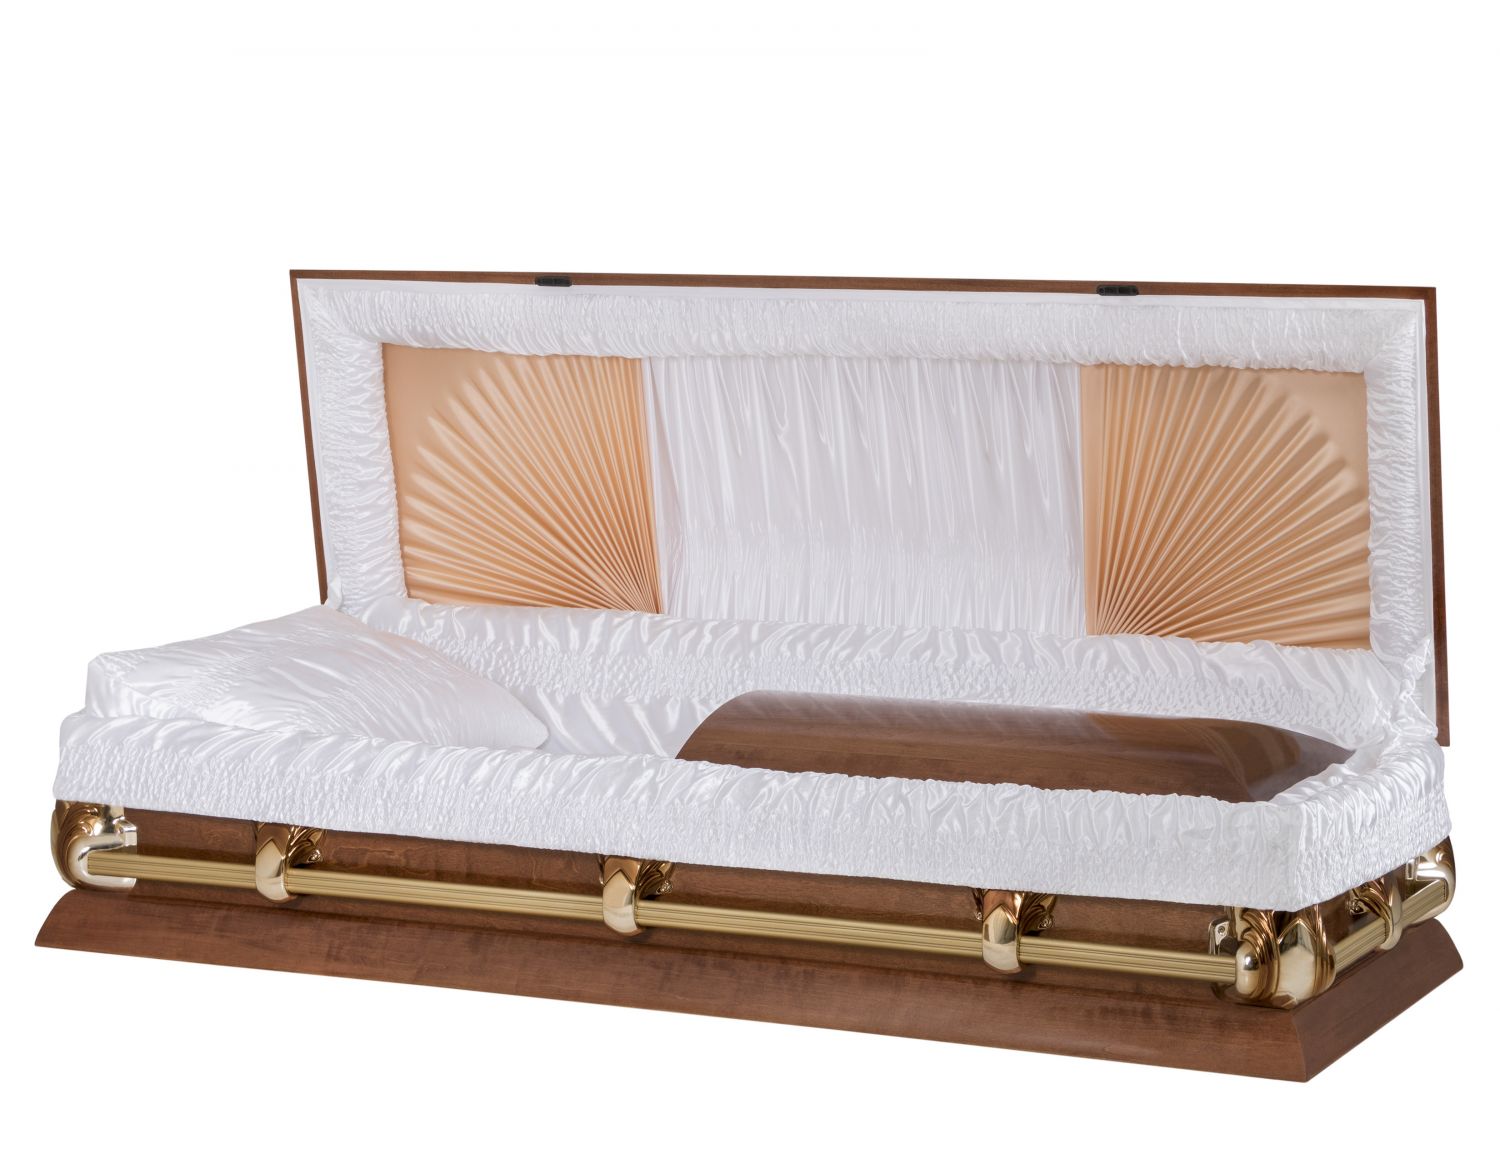 Cercueils Concept 15100-00111-N CERCUEIL DE PEUPLIER LUSTRÉ SATIN MEDIUM FIBRES DE BOIS NON B2850 BUMPER  3 X 1 OR BRILLANT 